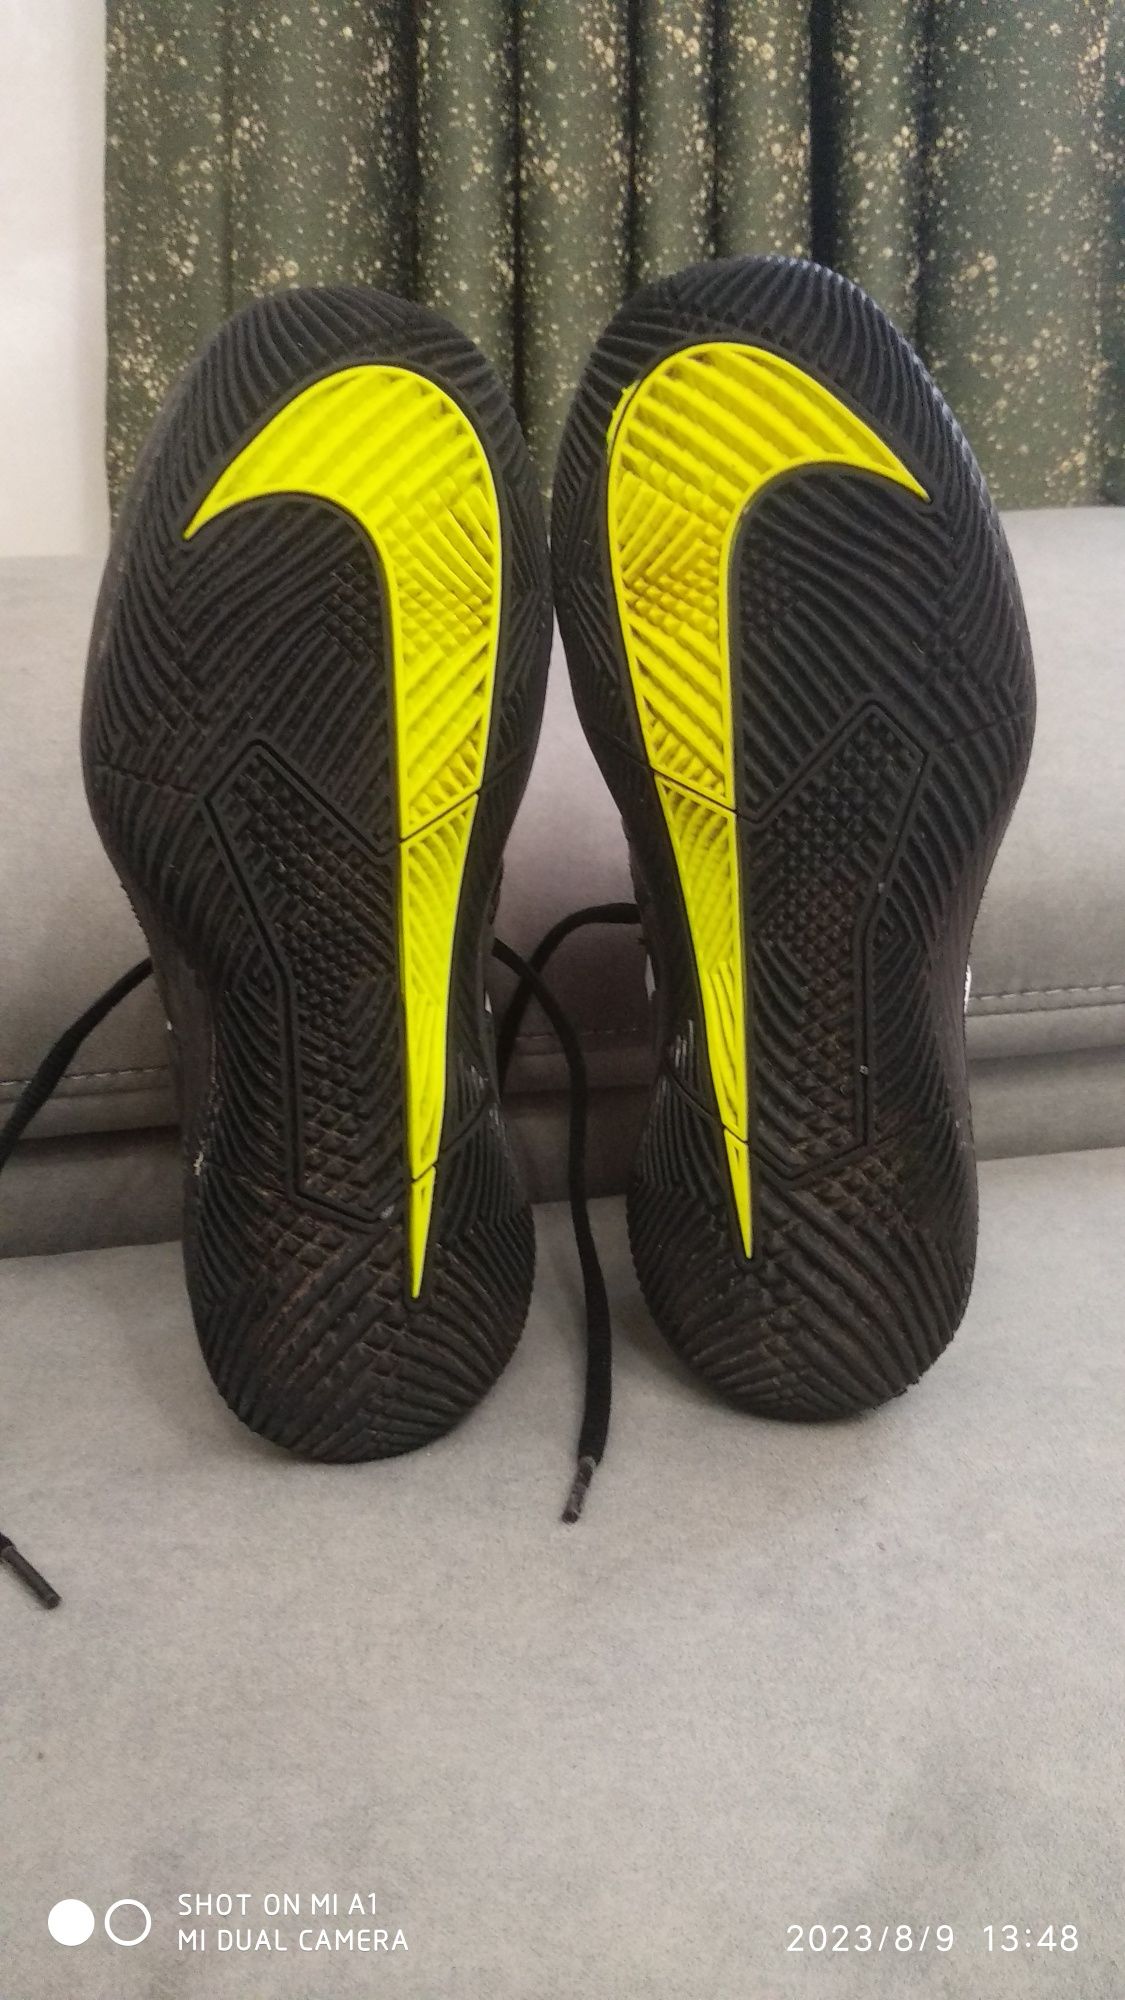 Кросівки Nike Zoom